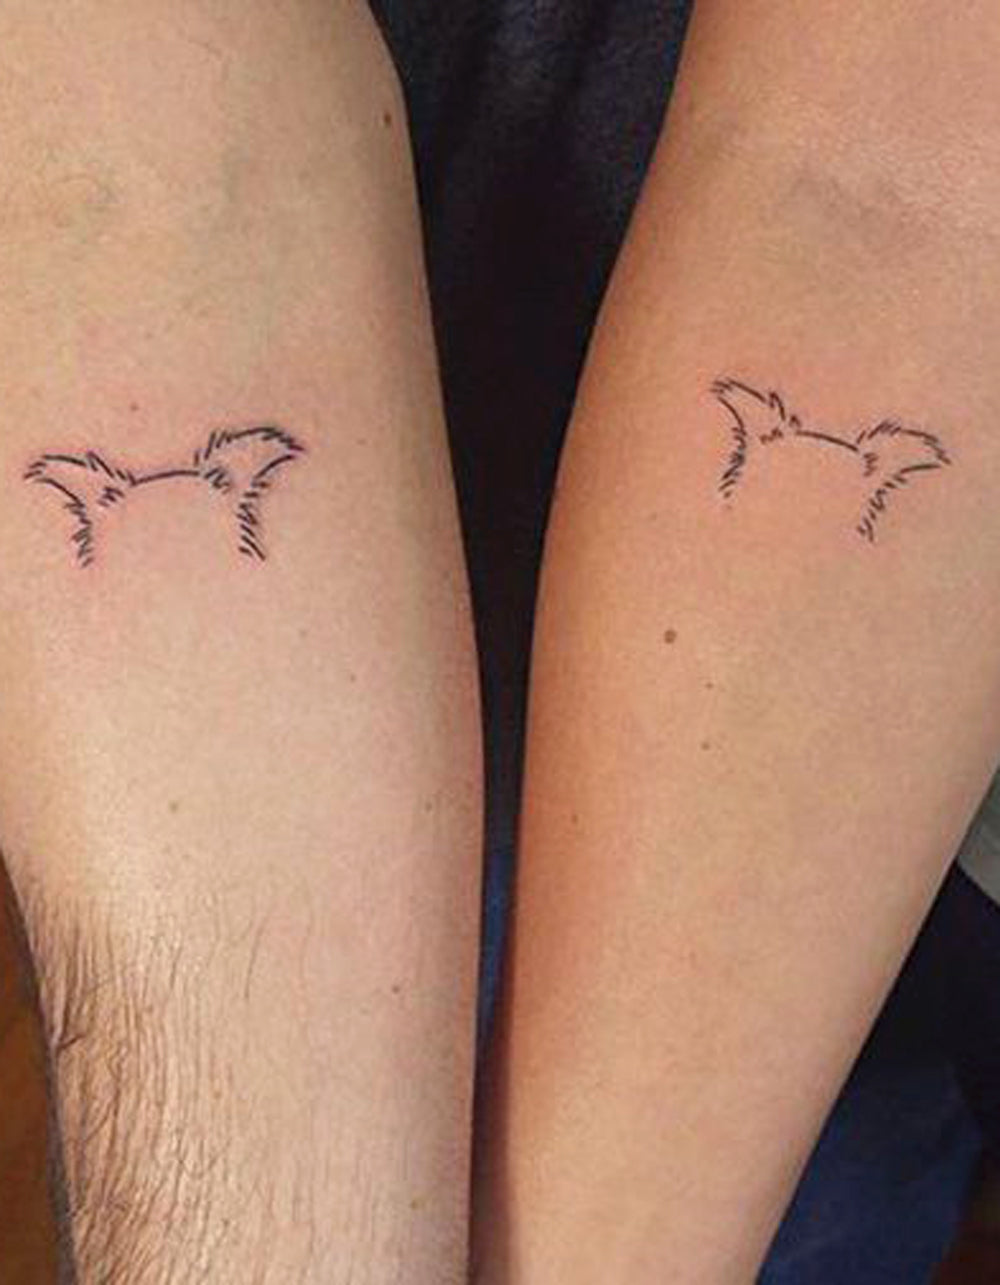 Matching Couple Dog Outline Ears Forearm Tattoo Ideas for Best Friends Small Minimal -  ideas de tatuaje de antebrazo de contorno de perro coincidentes - www.MyBodiArt.com 